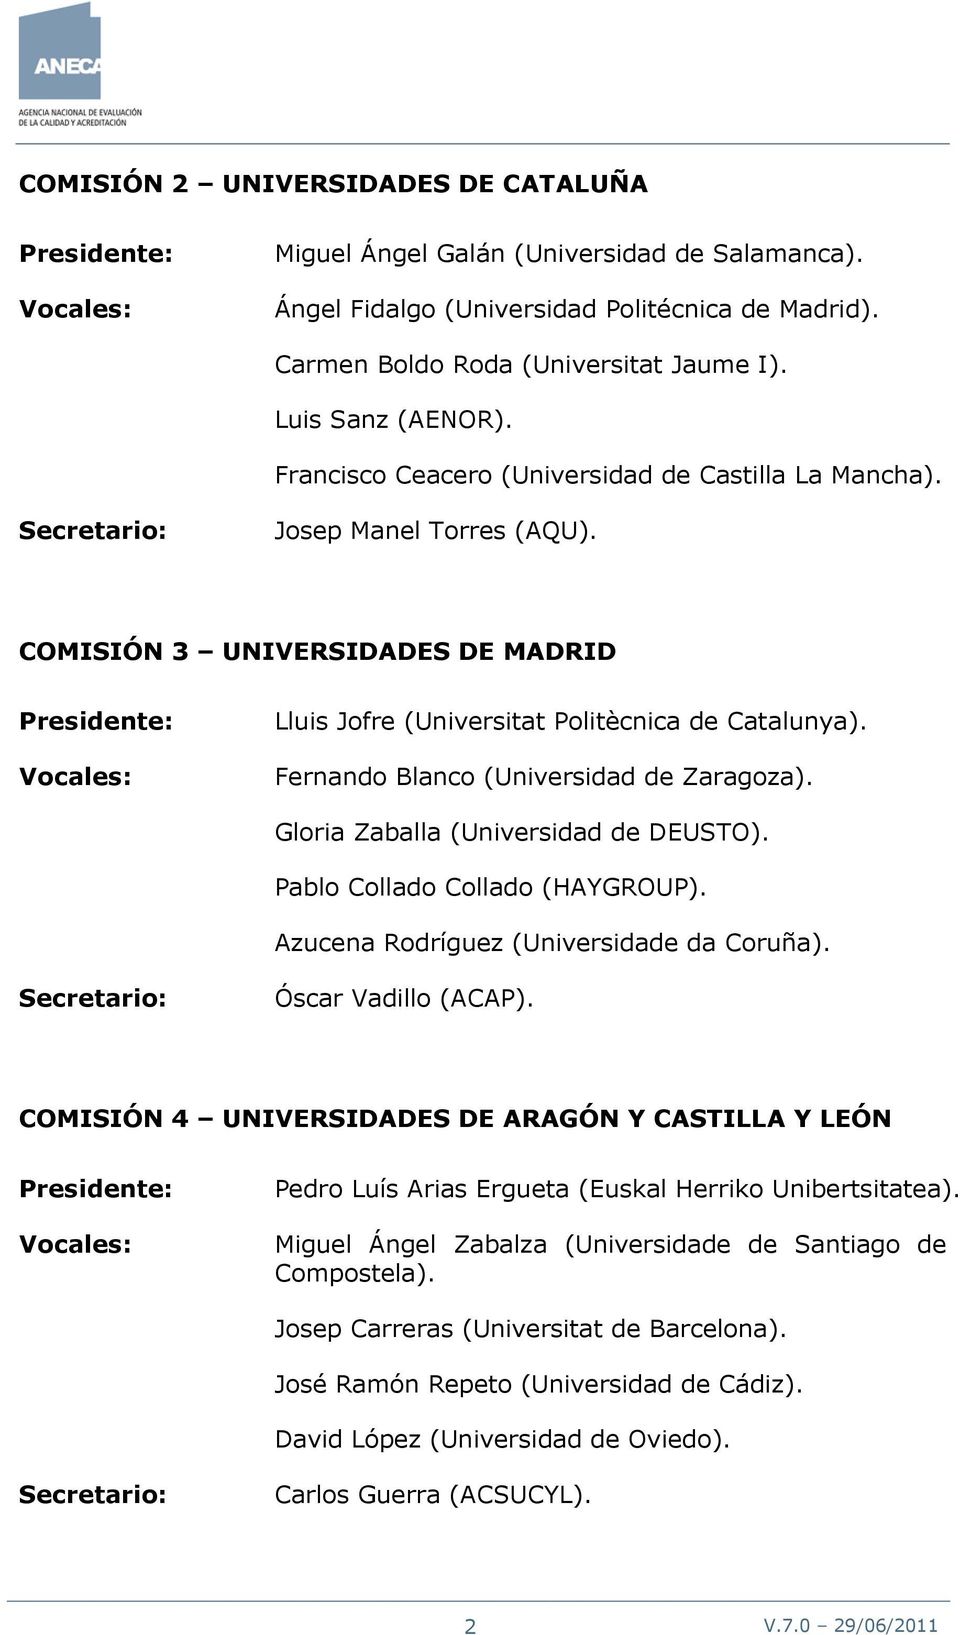 Fernando Blanco (Universidad de Zaragoza). Gloria Zaballa (Universidad de DEUSTO). Pablo Collado Collado (HAYGROUP). Azucena Rodríguez (Universidade da Coruña). Óscar Vadillo (ACAP).